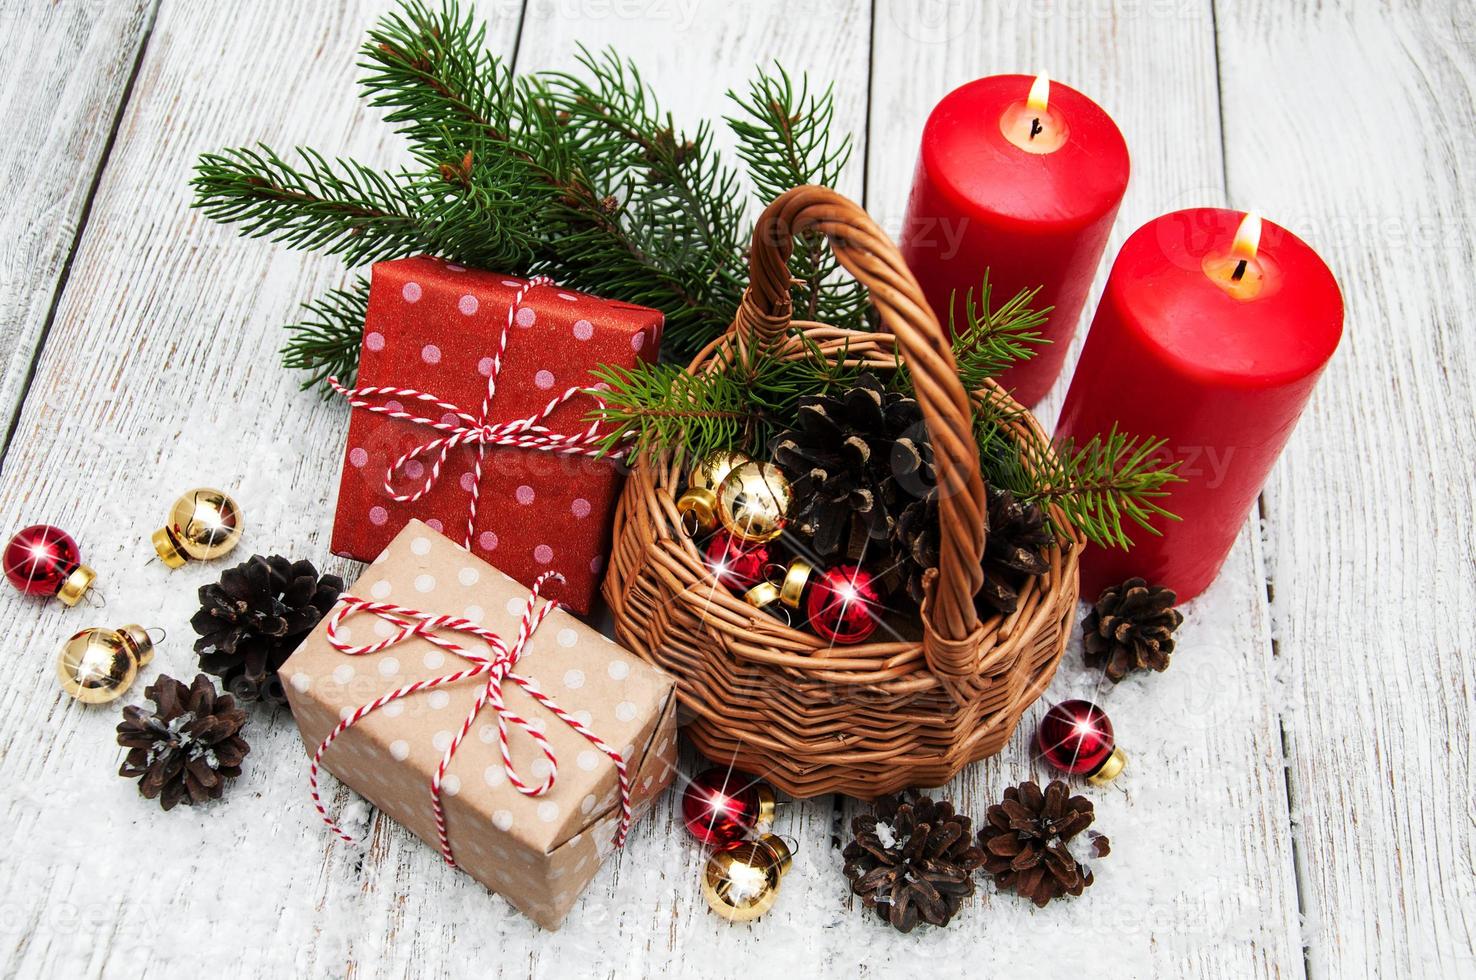 cajas de regalo de navidad y rama de abeto en cesta foto